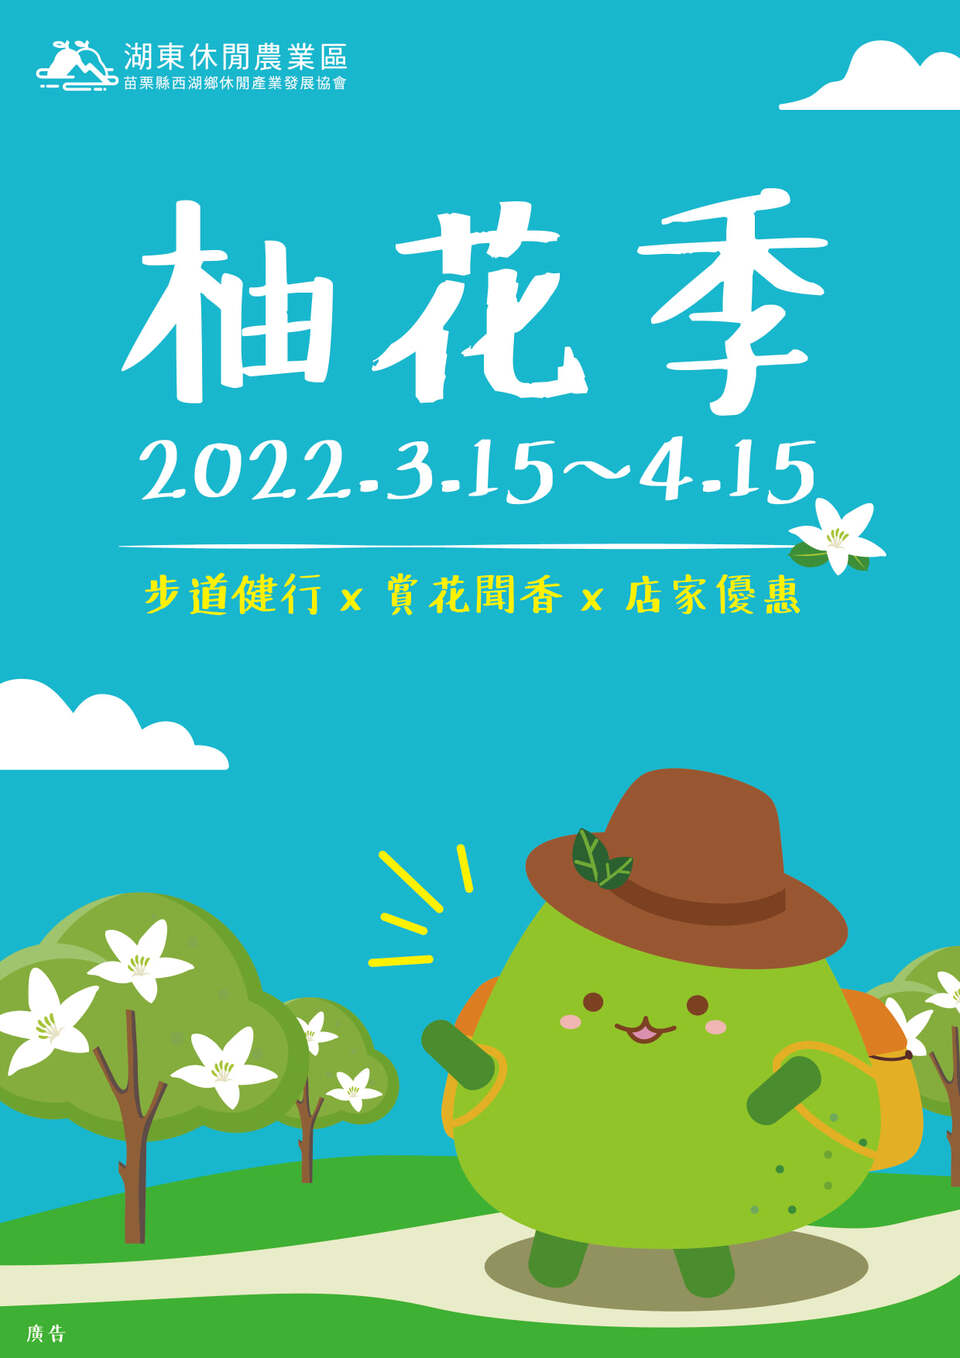 「柚子山賞花健行趣」季節限定活動從3月15日至4月15日期間展開